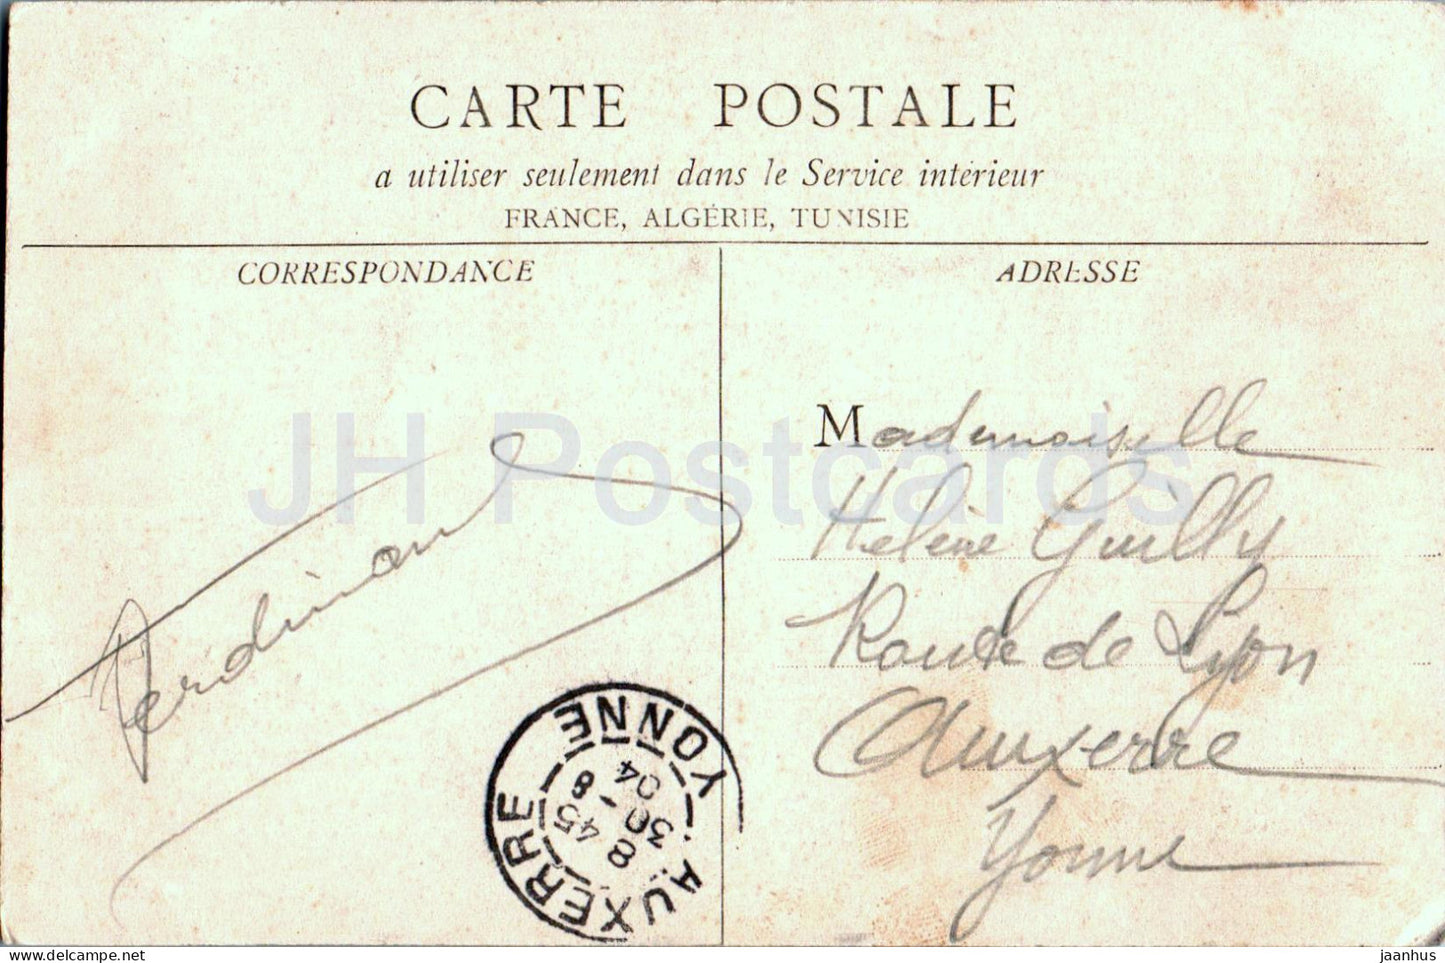 Alais - Eglise St Joseph - Kirche - alte Postkarte - 1904 - Frankreich - gebraucht 